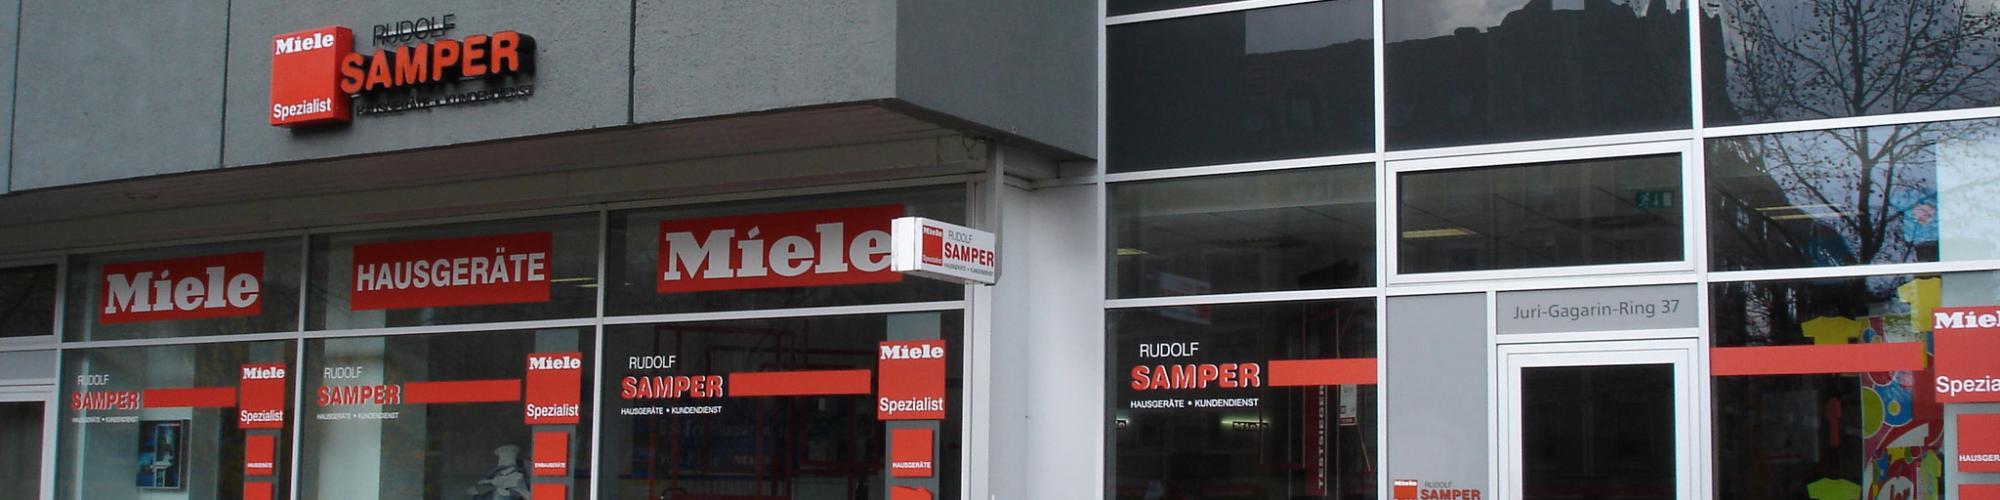 Samper GmbH & Co. KG